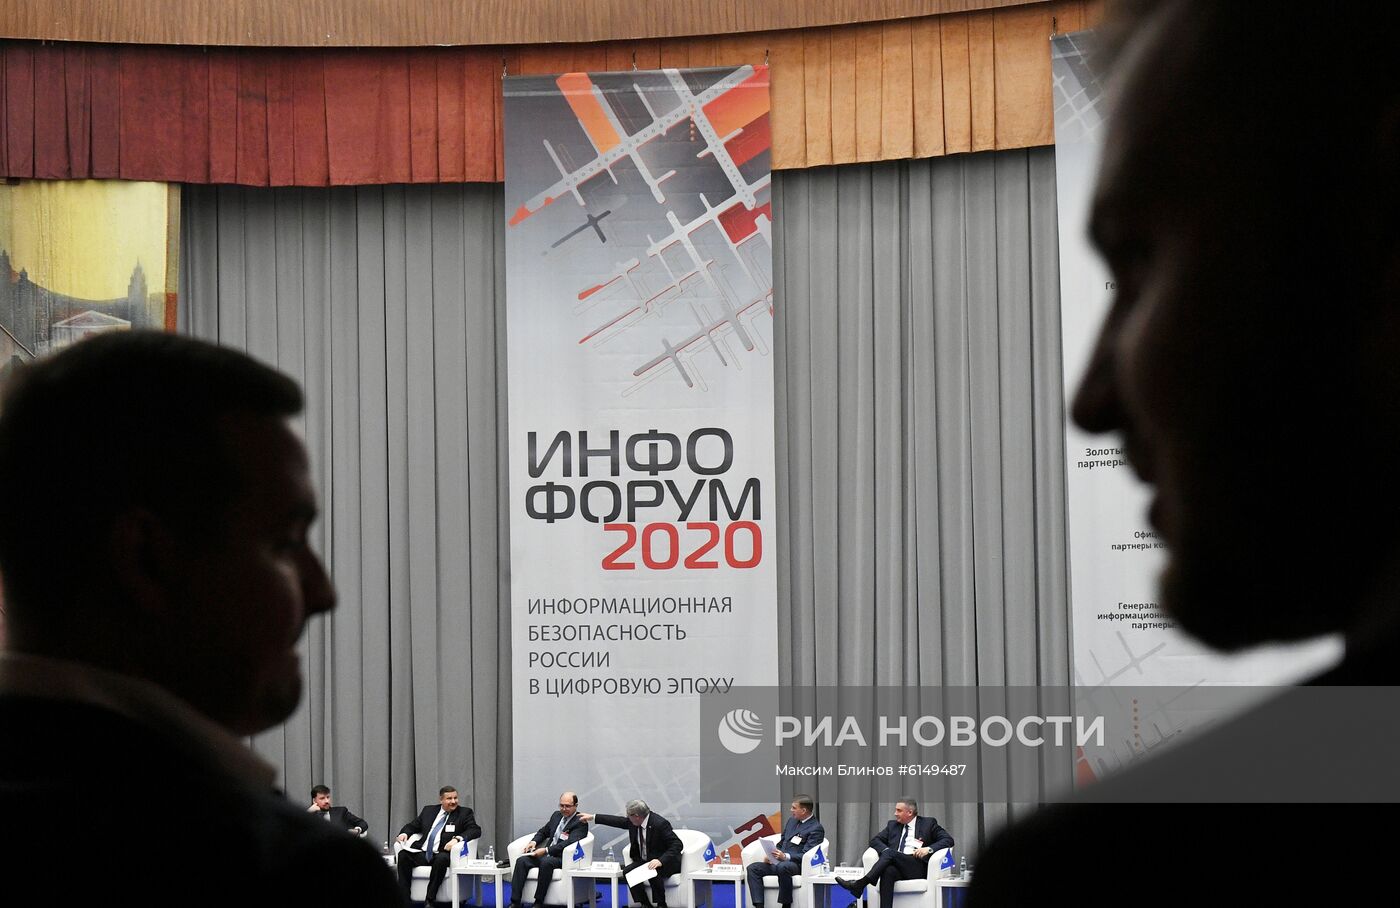 Форум информационной безопасности "Инфофорум-2020" 